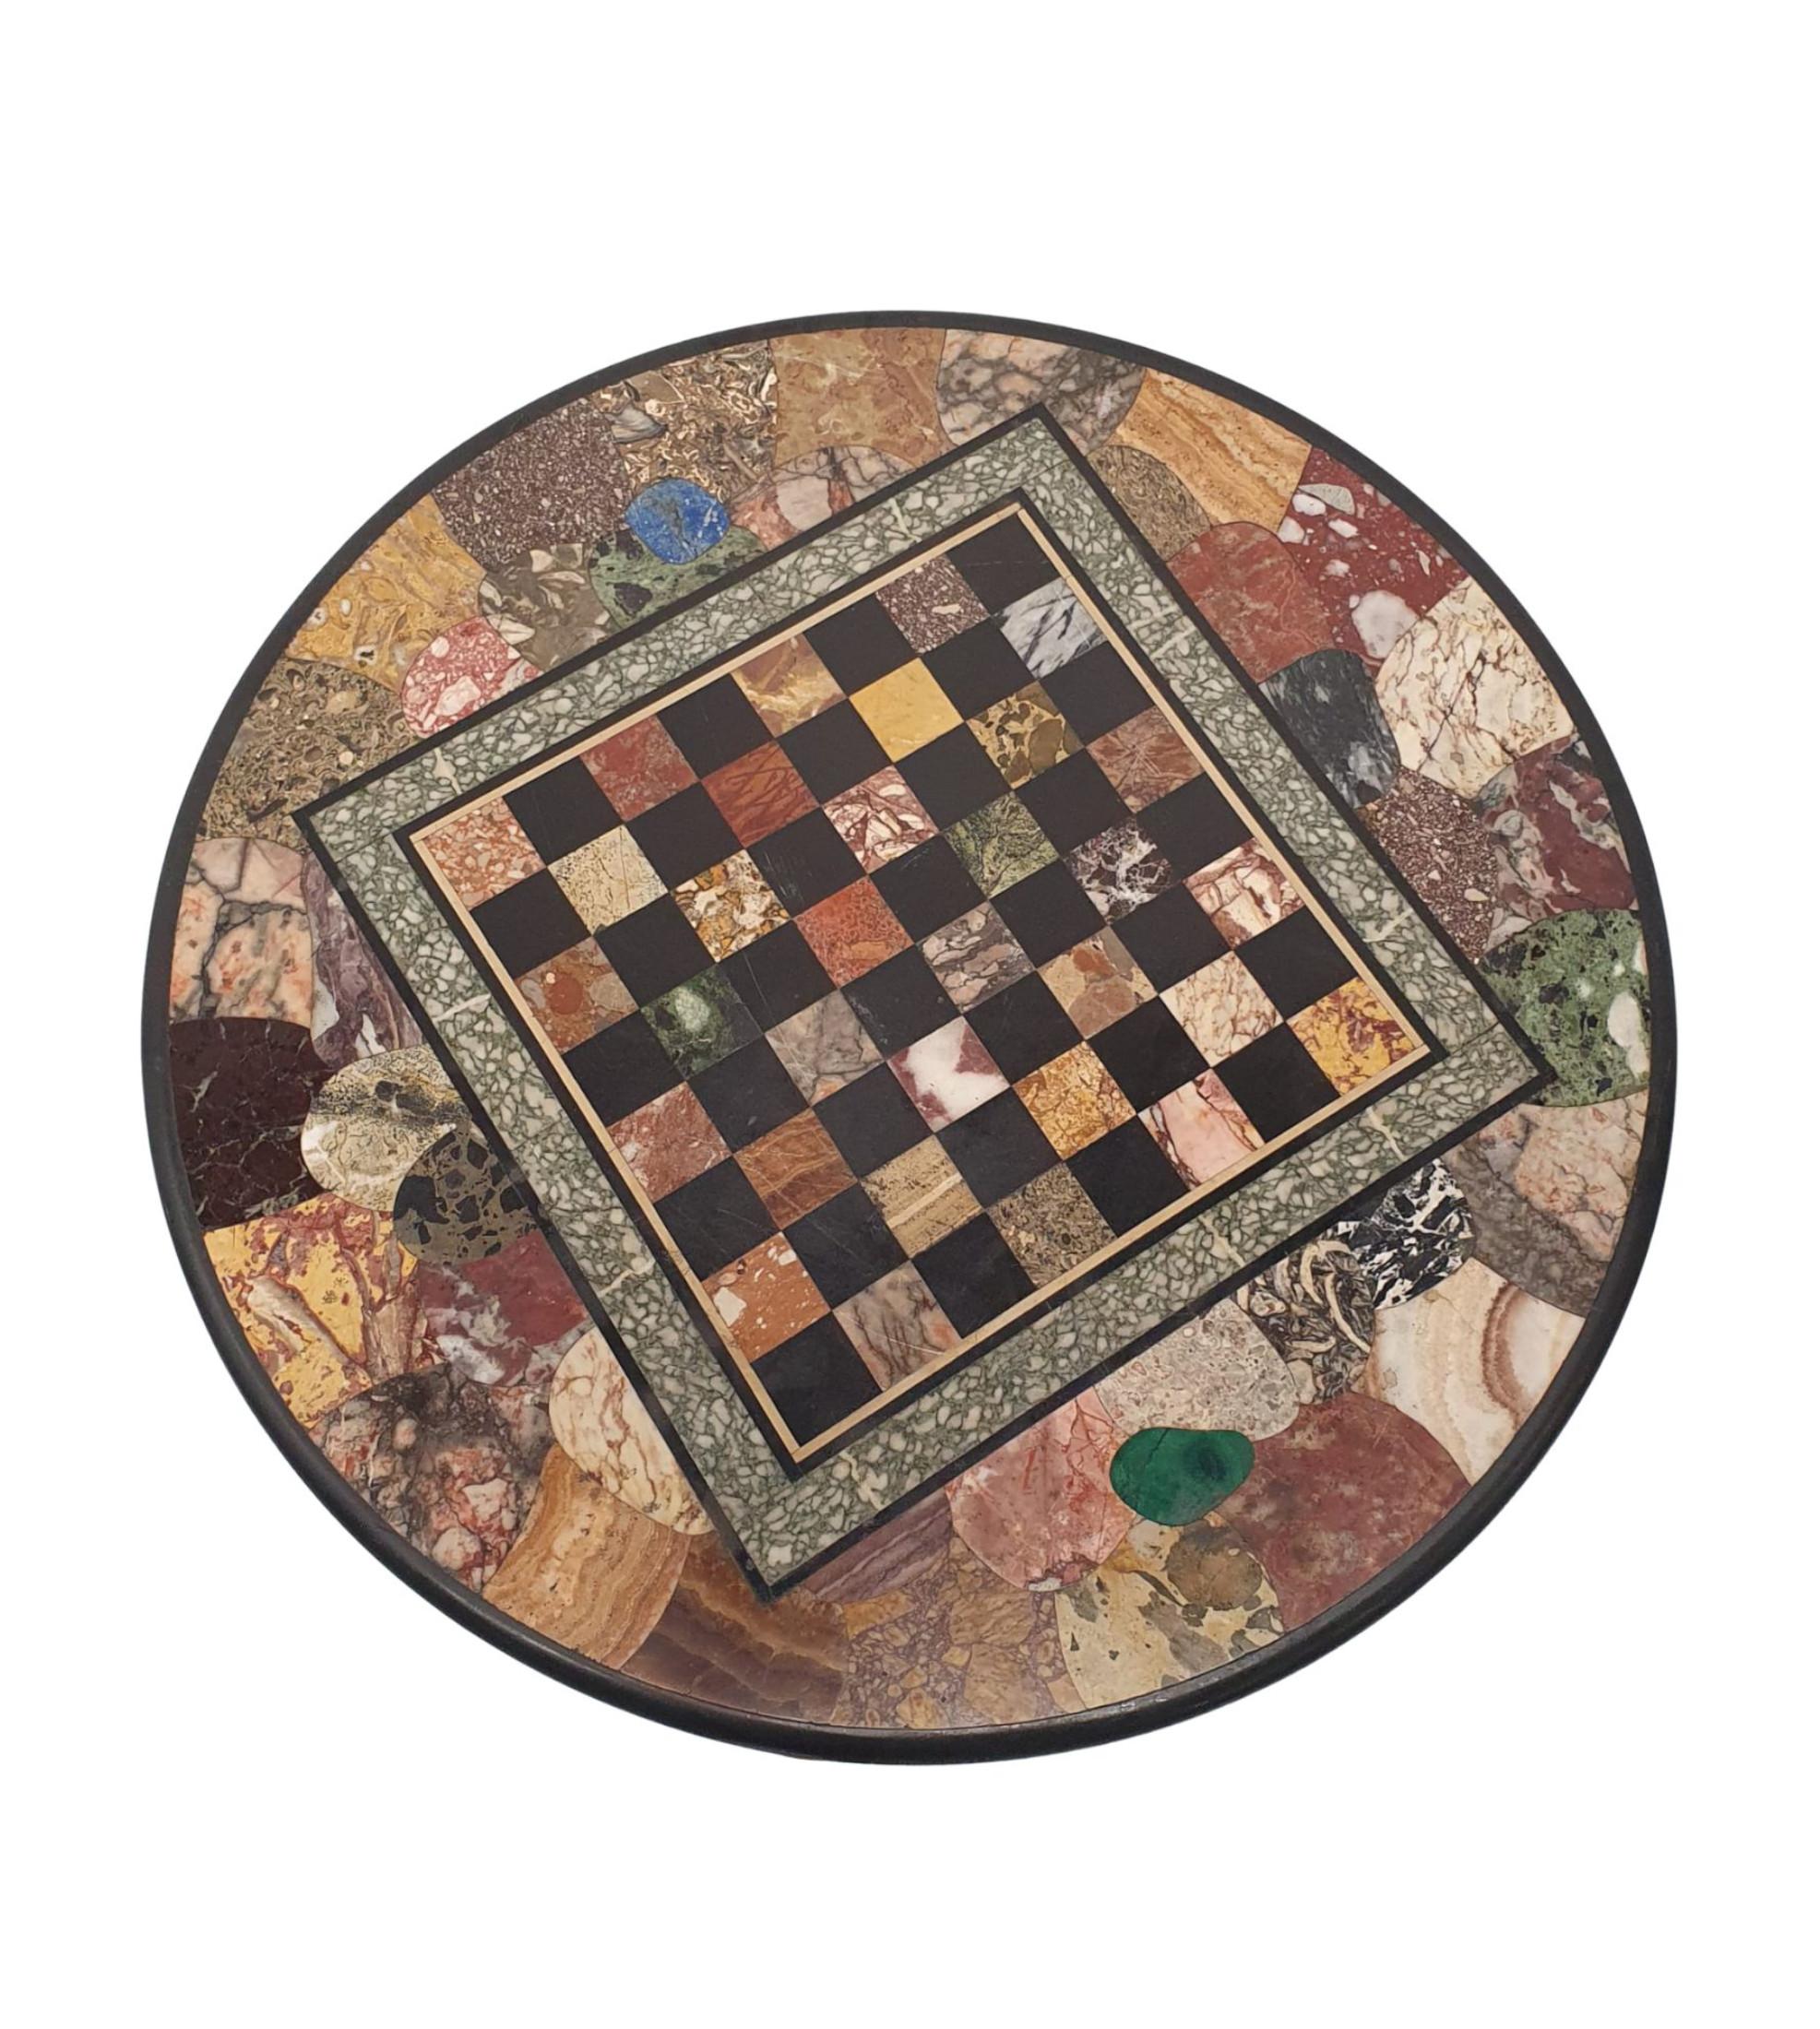 Eine außergewöhnlich seltene und feine 19. Jahrhundert Marmorplatte Mitteltisch von Circu-lar Form, die atemberaubende Mikro-Mosaik-Marmorplatte mit Schachbrett, um die zentrale Reserve ist mit fabelhaften Beispiele von Marmor aus Sienna, Pietro